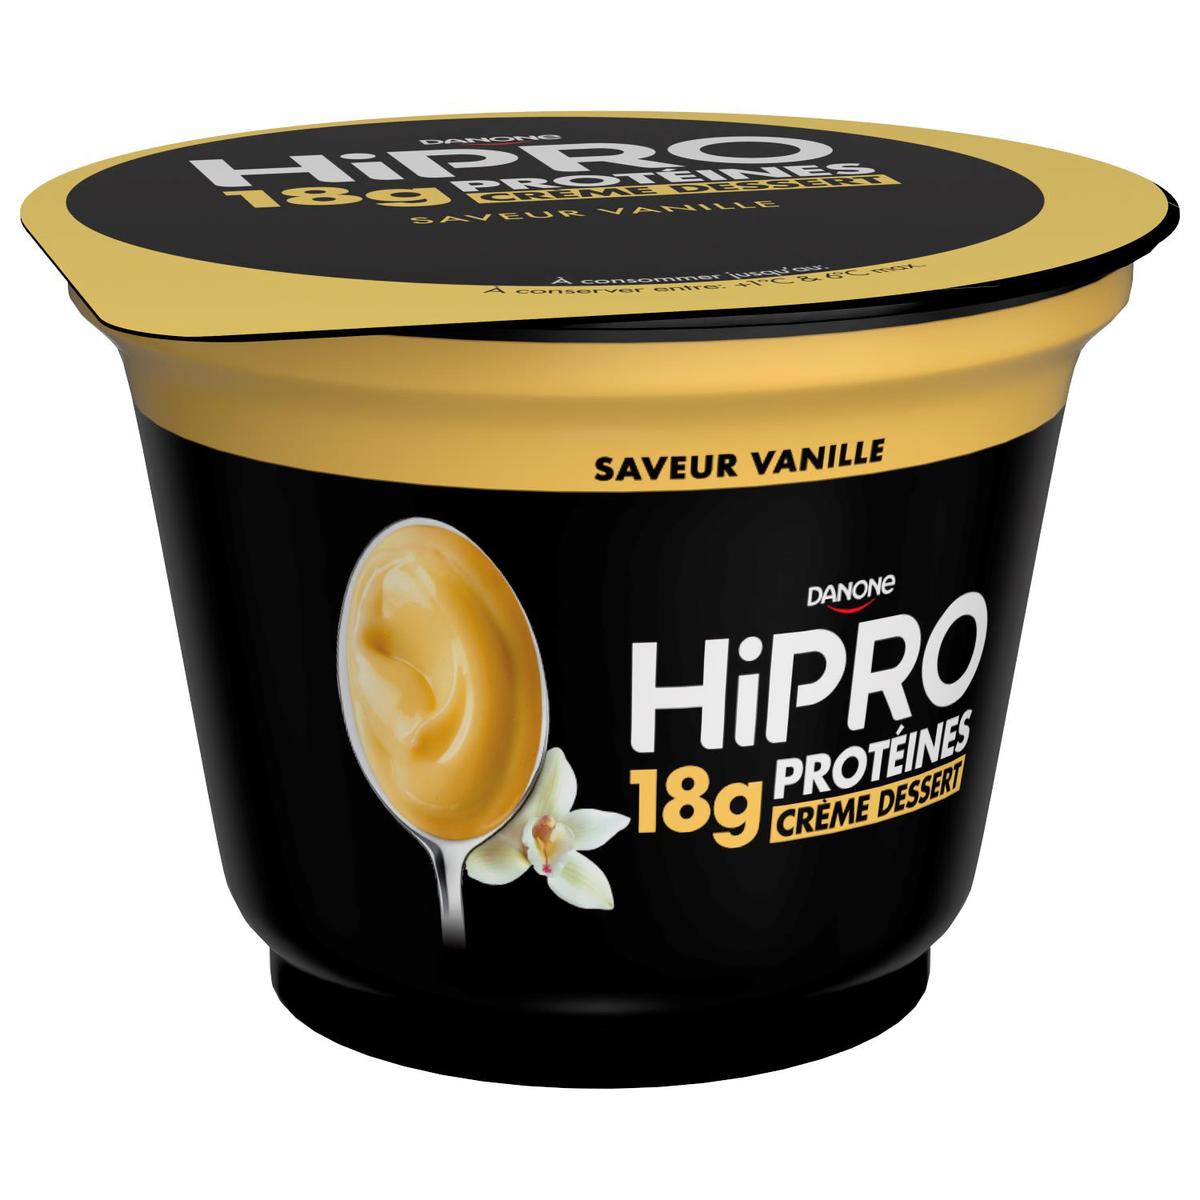 Crème dessert vanille Hipro 180g sur